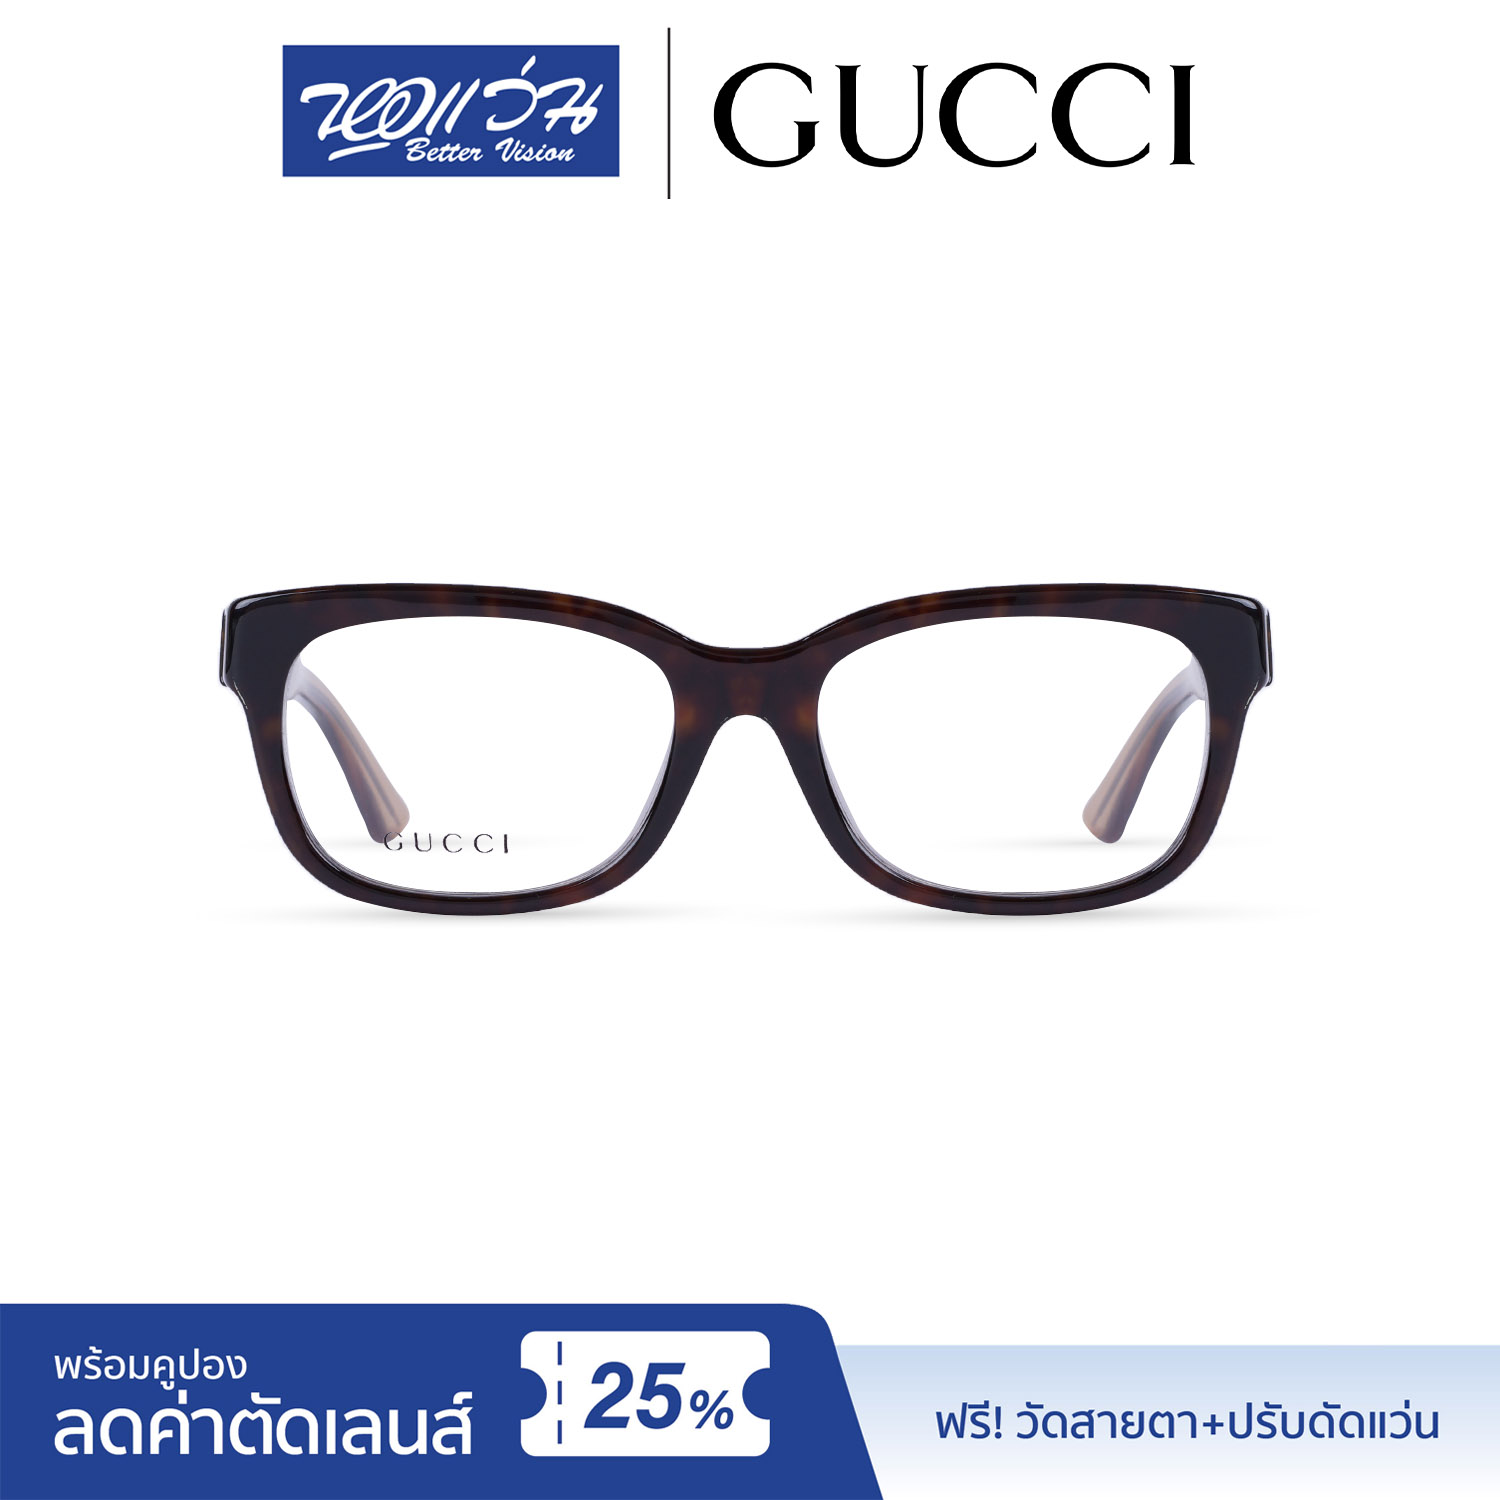 กรอบแว่นตา กุชชี่ Gucci Eyeglasses  แถมฟรีส่วนลดค่าตัดเลนส์ 25% free 25% lens discount รุ่น FGC3759